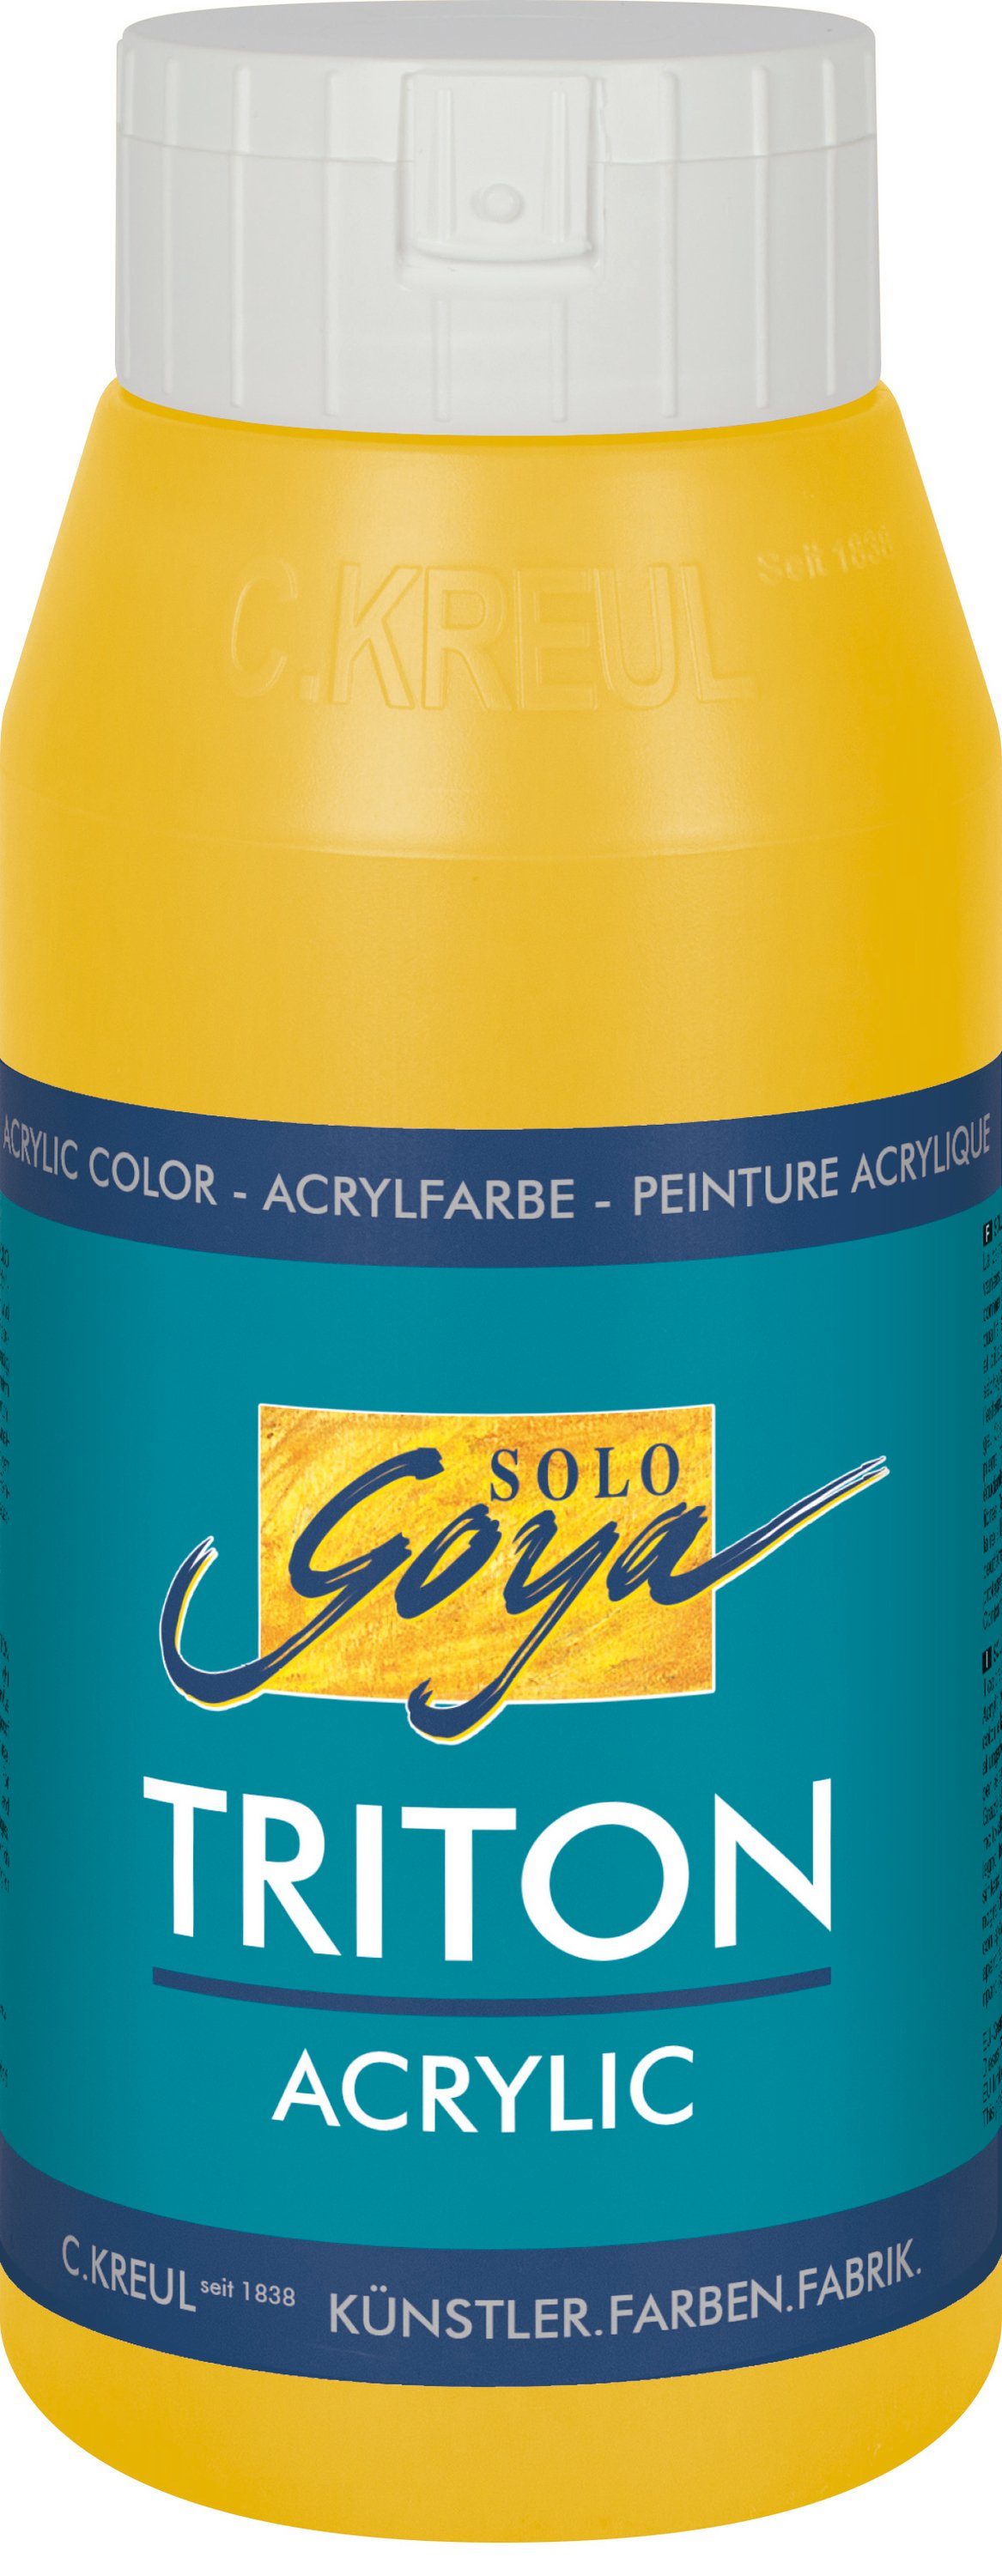 Gold ml Goya Kreul 750 Triton Solo Acrylfarbe Acrylic,